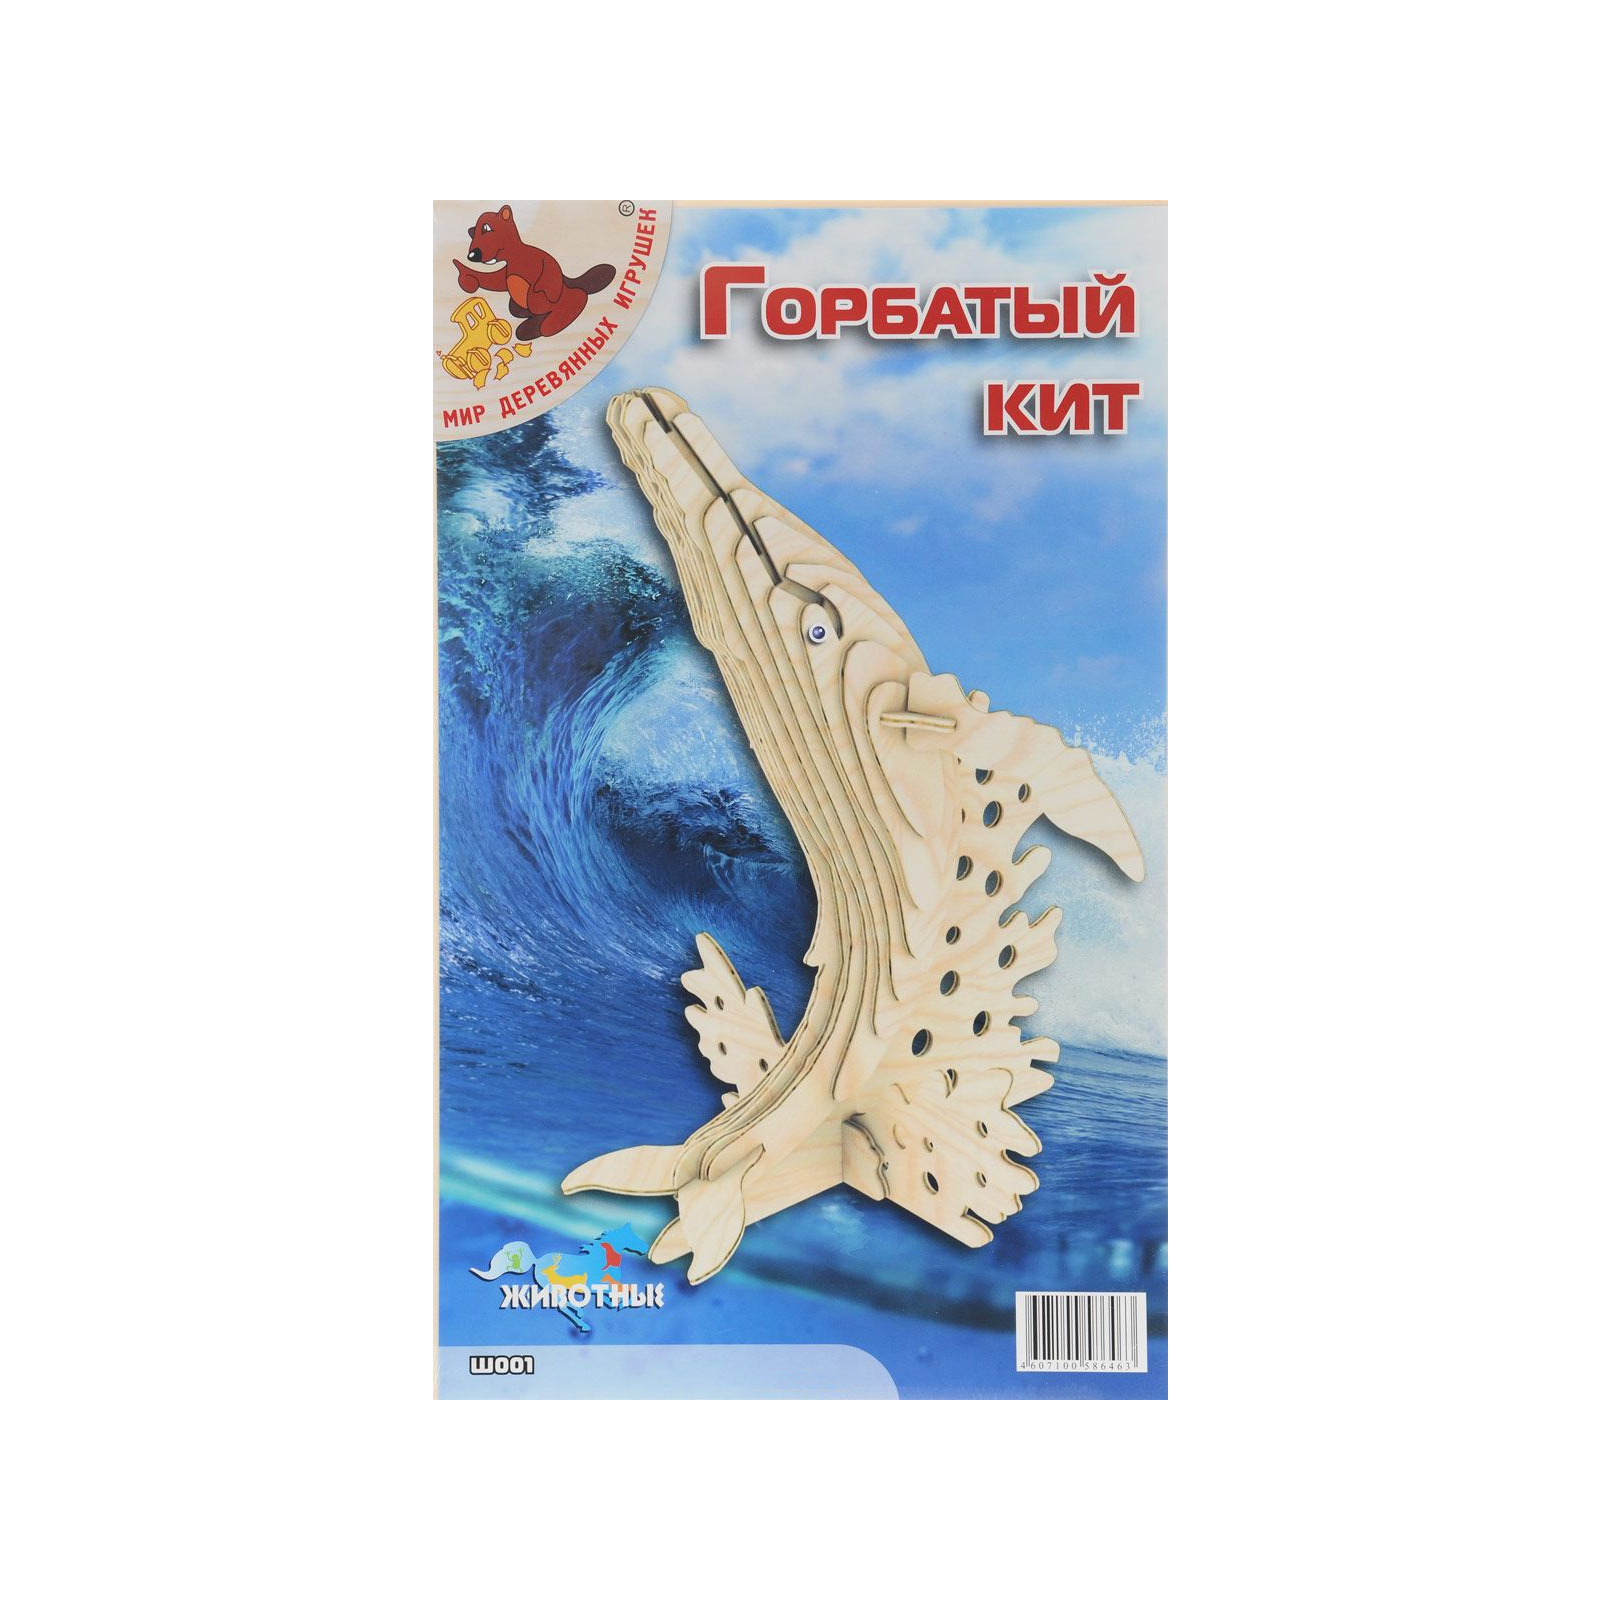 Сборная модель Мир деревянных игрушек Горбатый кит (Ш001)